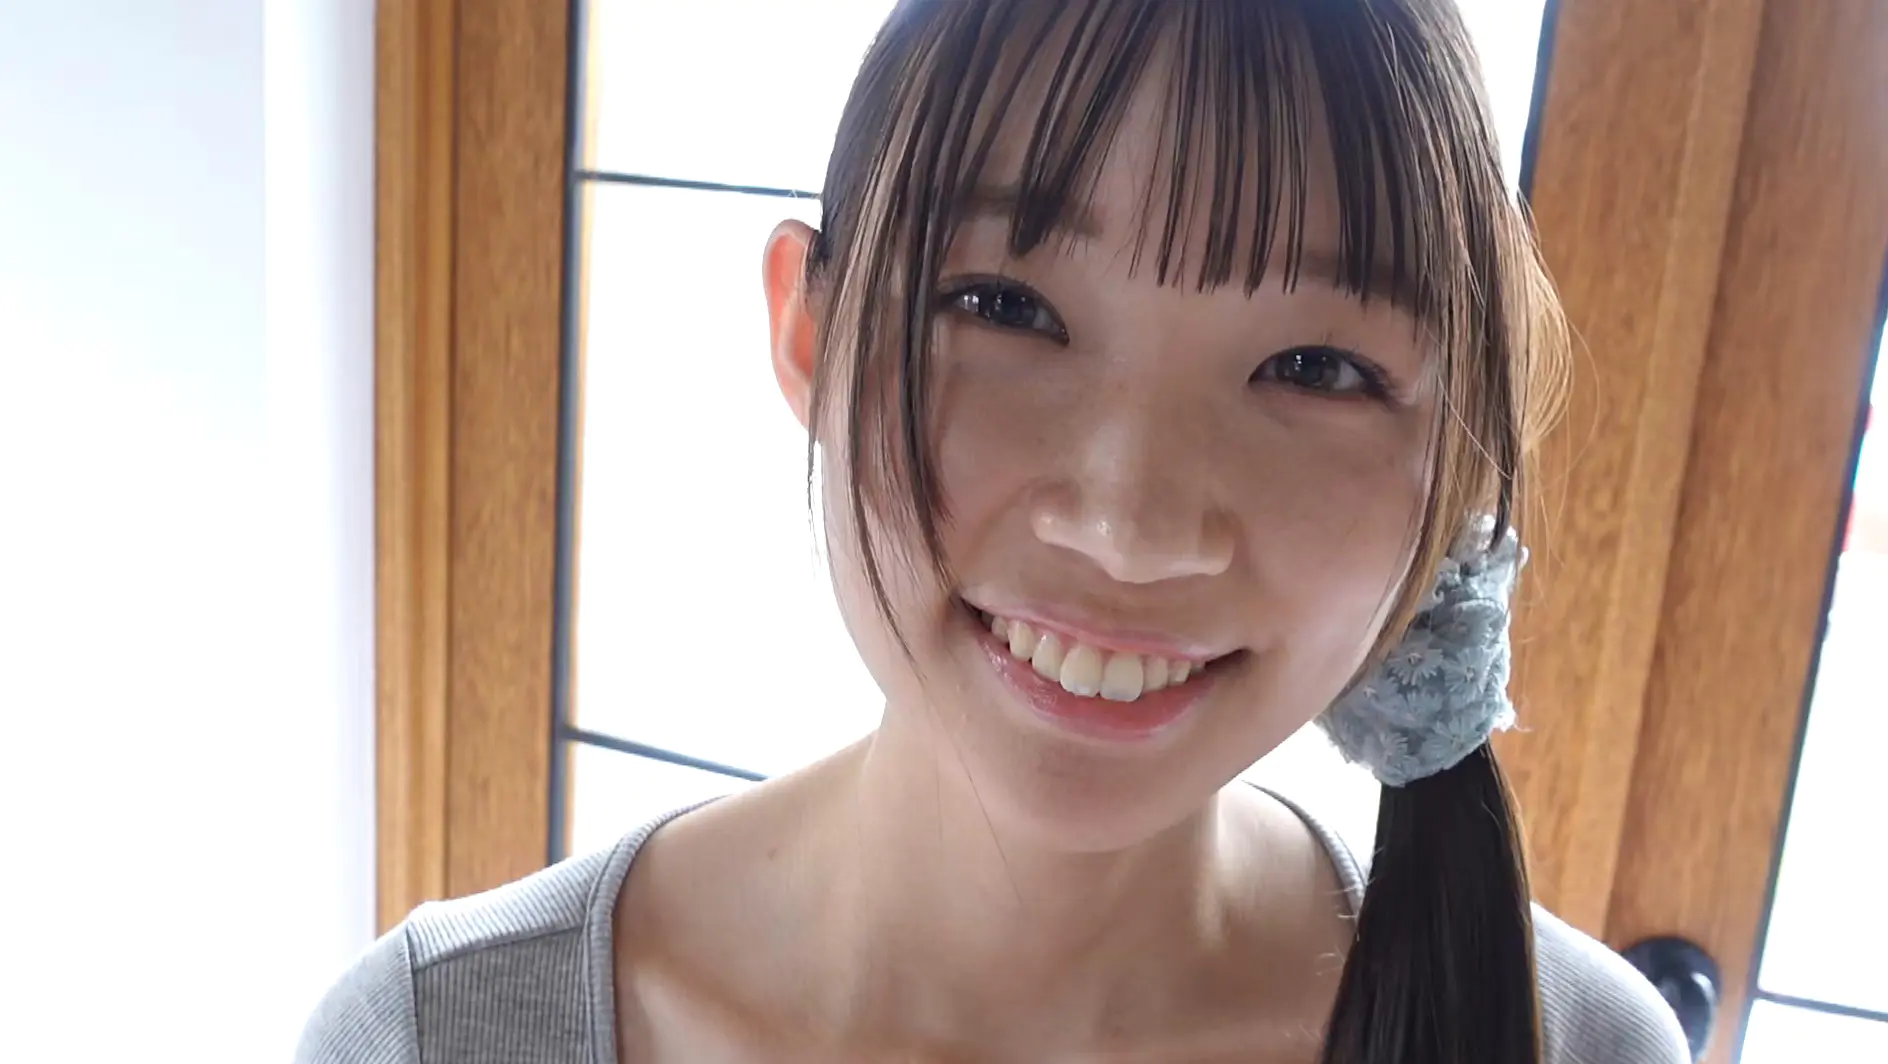 『あゆの初恋 波崎天結』笑顔がかわいいスレンダー美少女のエッチなボディがたまらないグラビア動画:1